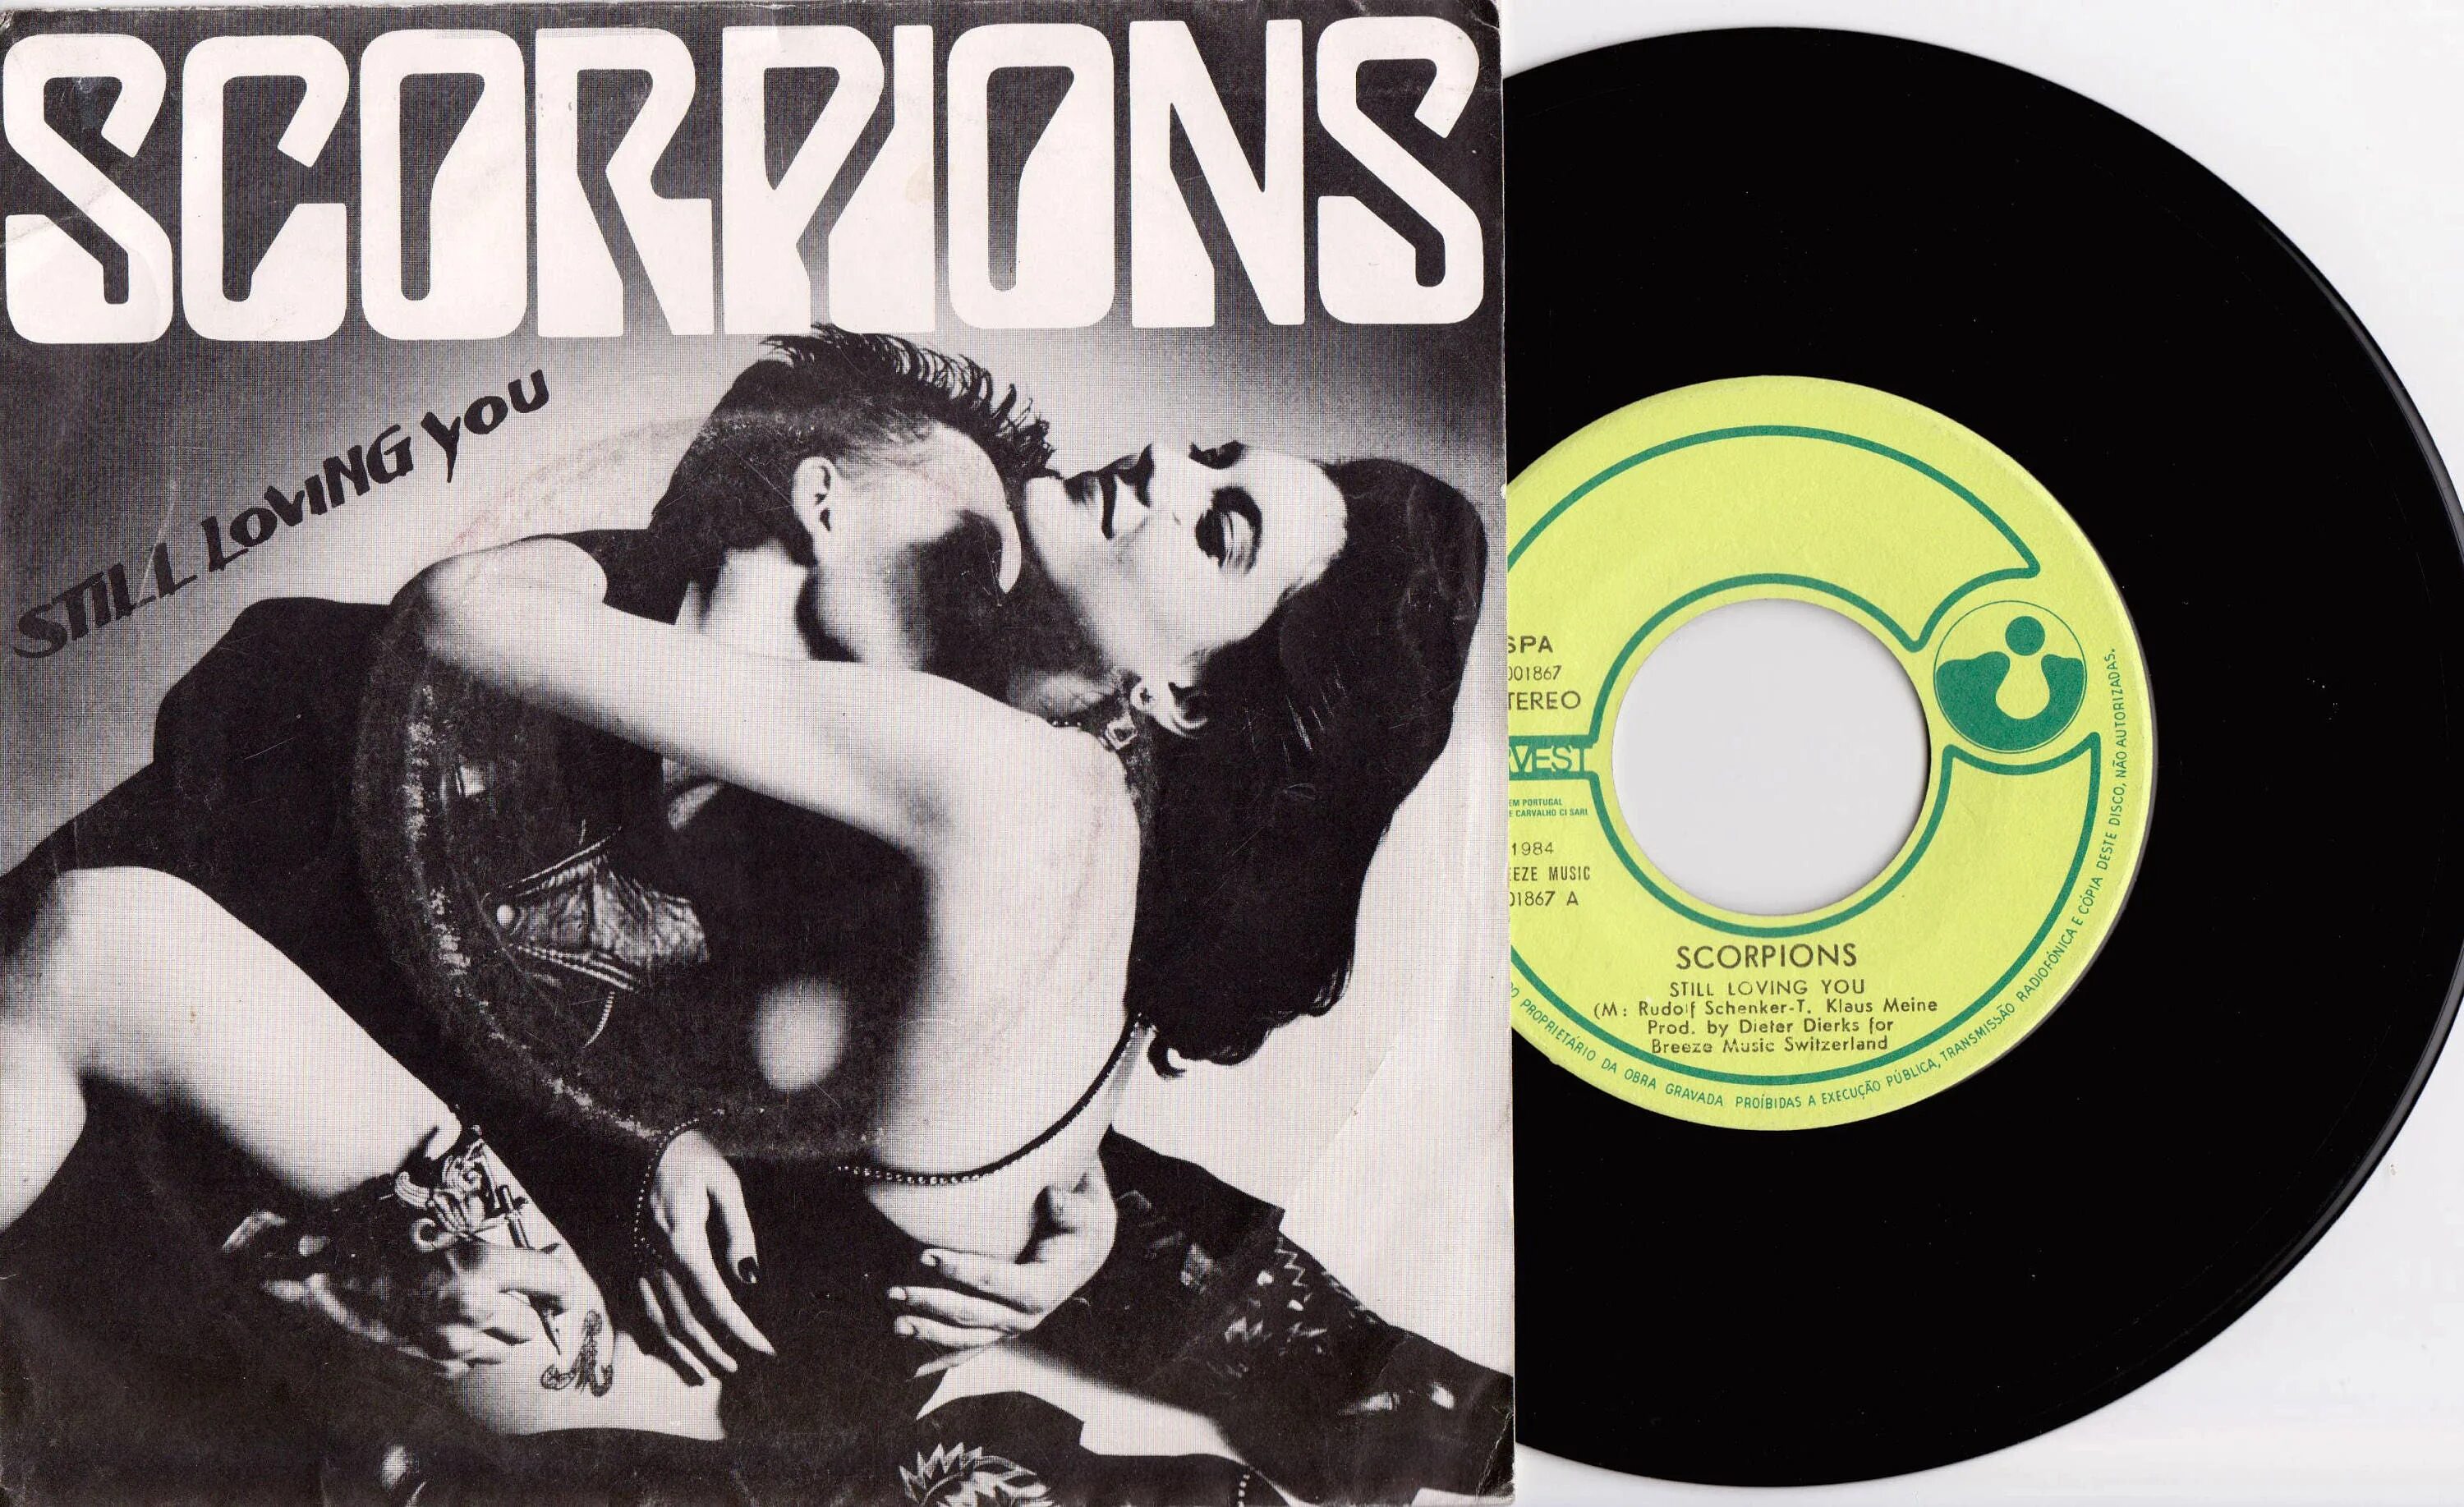 Still love you scorpions текст. Скорпионс винил 1984. Скорпионс стил. Scorpions still loving you 1984. Scorpions 1984 Love at first Sting LP.